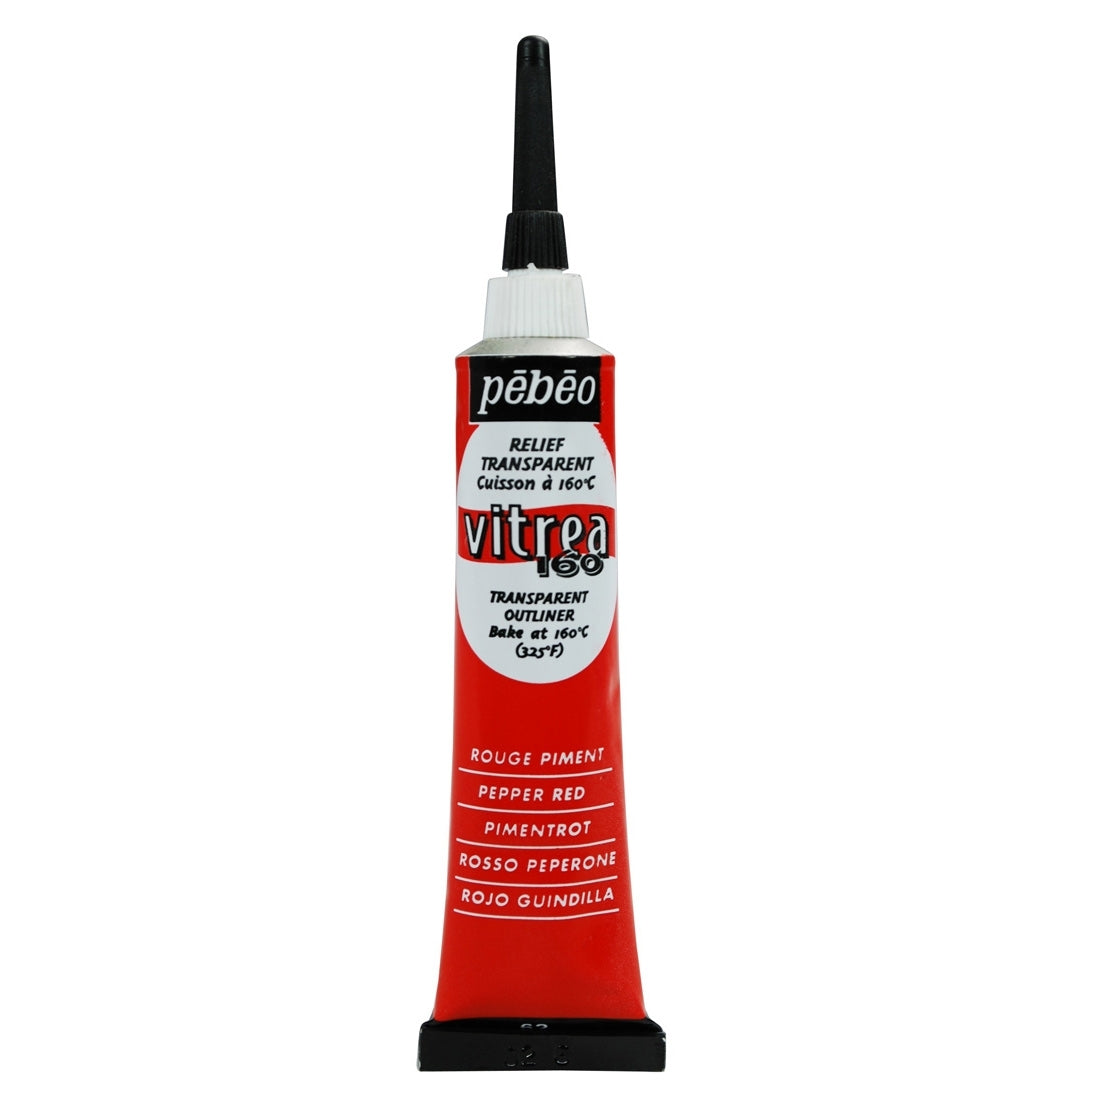 Pebeo - Vitrea 160 - Glass & Tile Paint - Gloss Outliner - Pepper Red 20ml